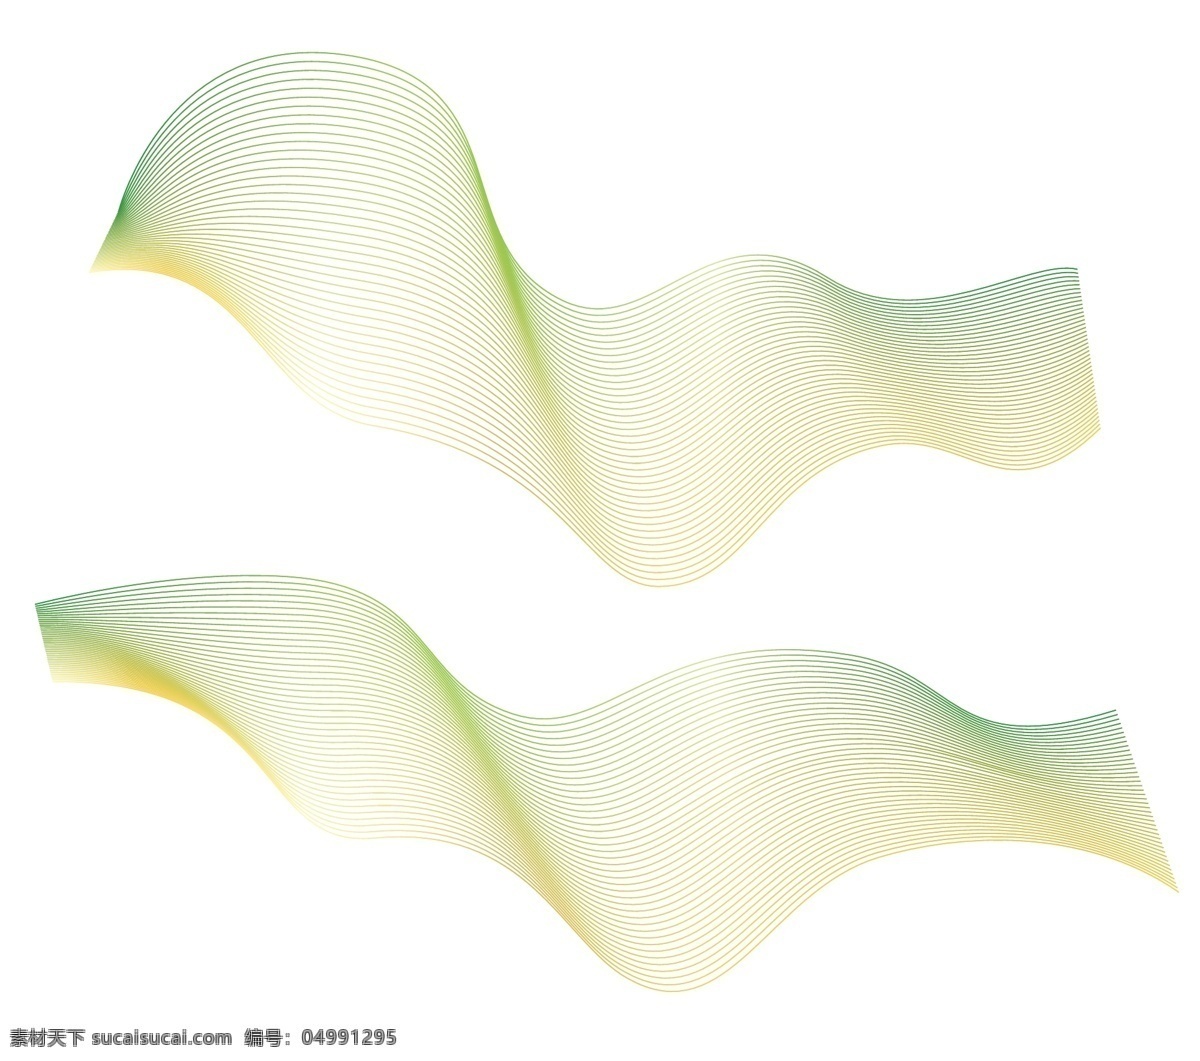 线条 渐变 黄绿渐变 抽象线条图片 抽象线条 曲线 抽象 底纹边框 抽象底纹